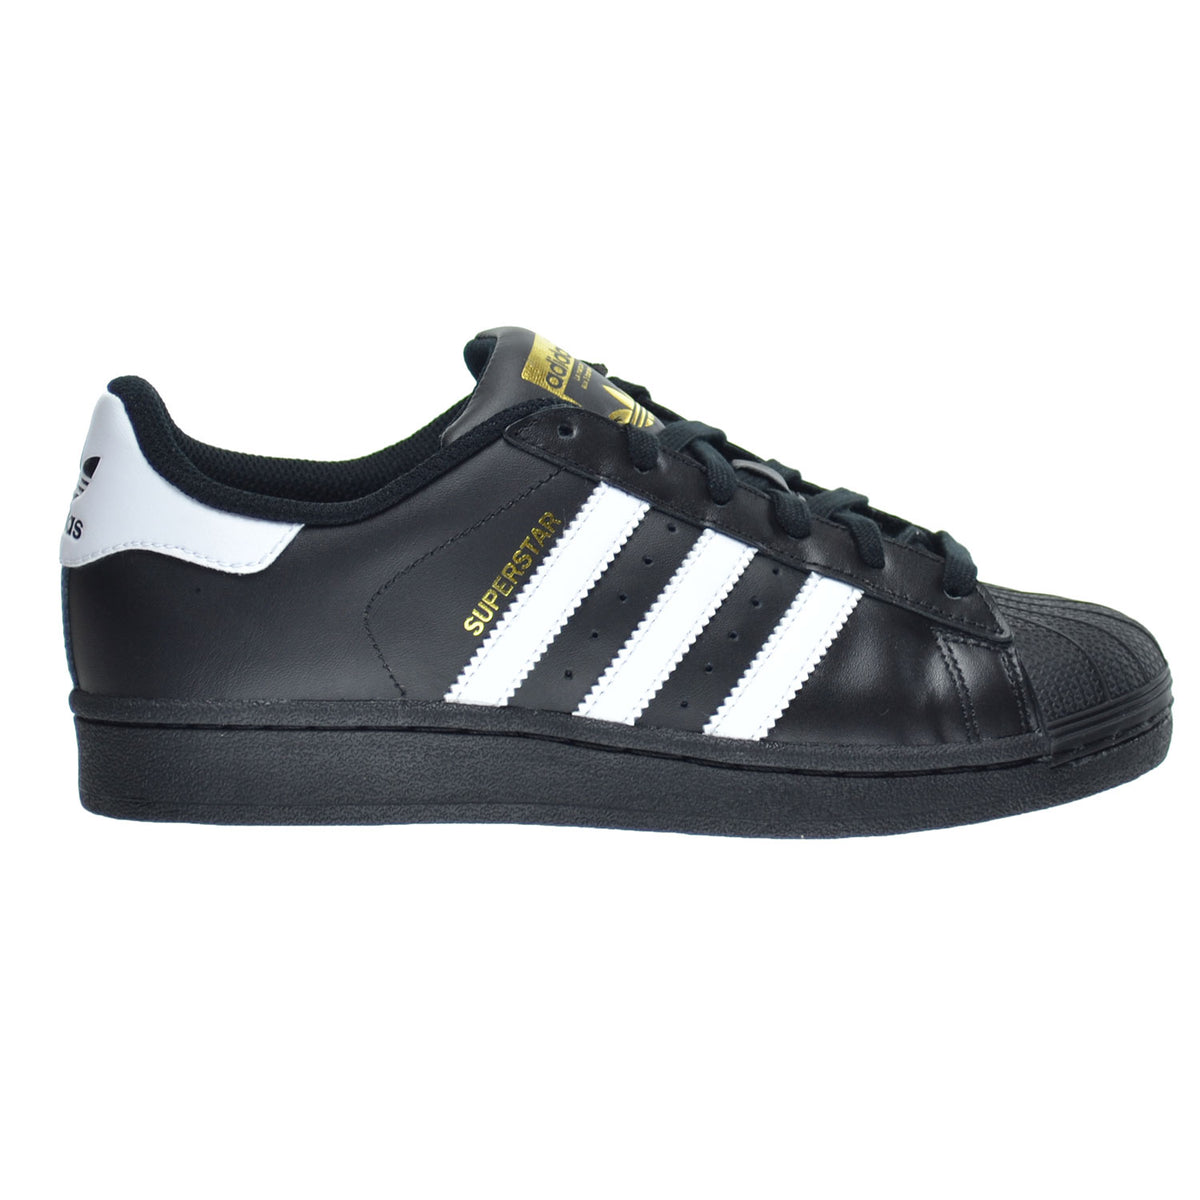 Fantasierijk Tegenstander Erfenis Adidas Superstar Foundation J Big Kid's Shoes Core Black/FTW White